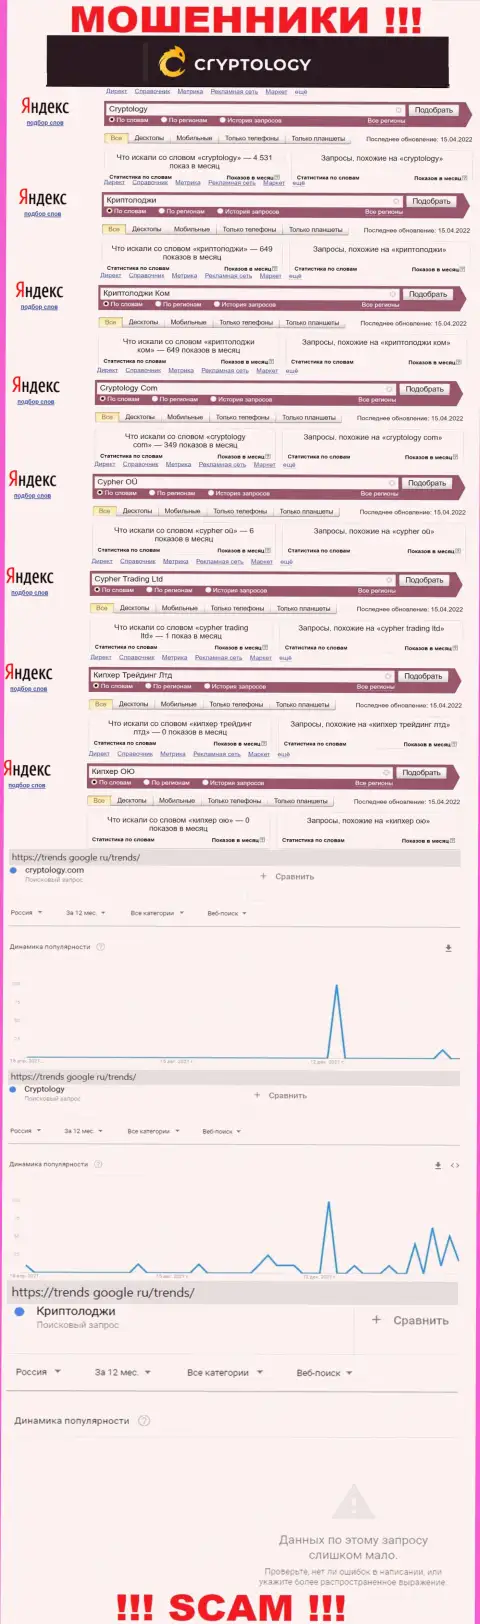 Суммарное число поисковых запросов в поисковиках глобальной интернет сети по бренду мошенников Криптолоджи